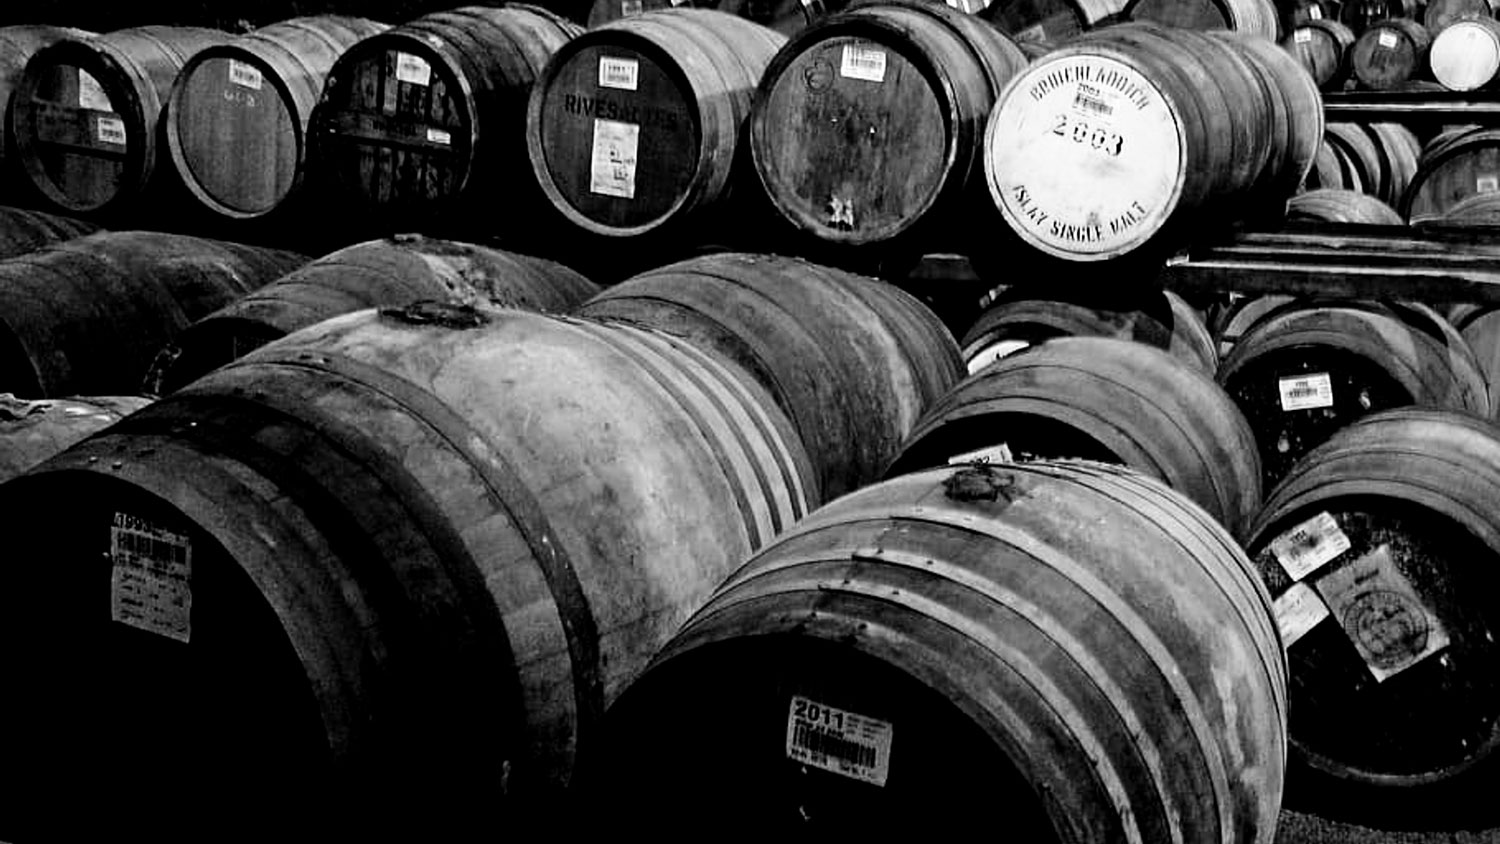 whisky cask return on investment